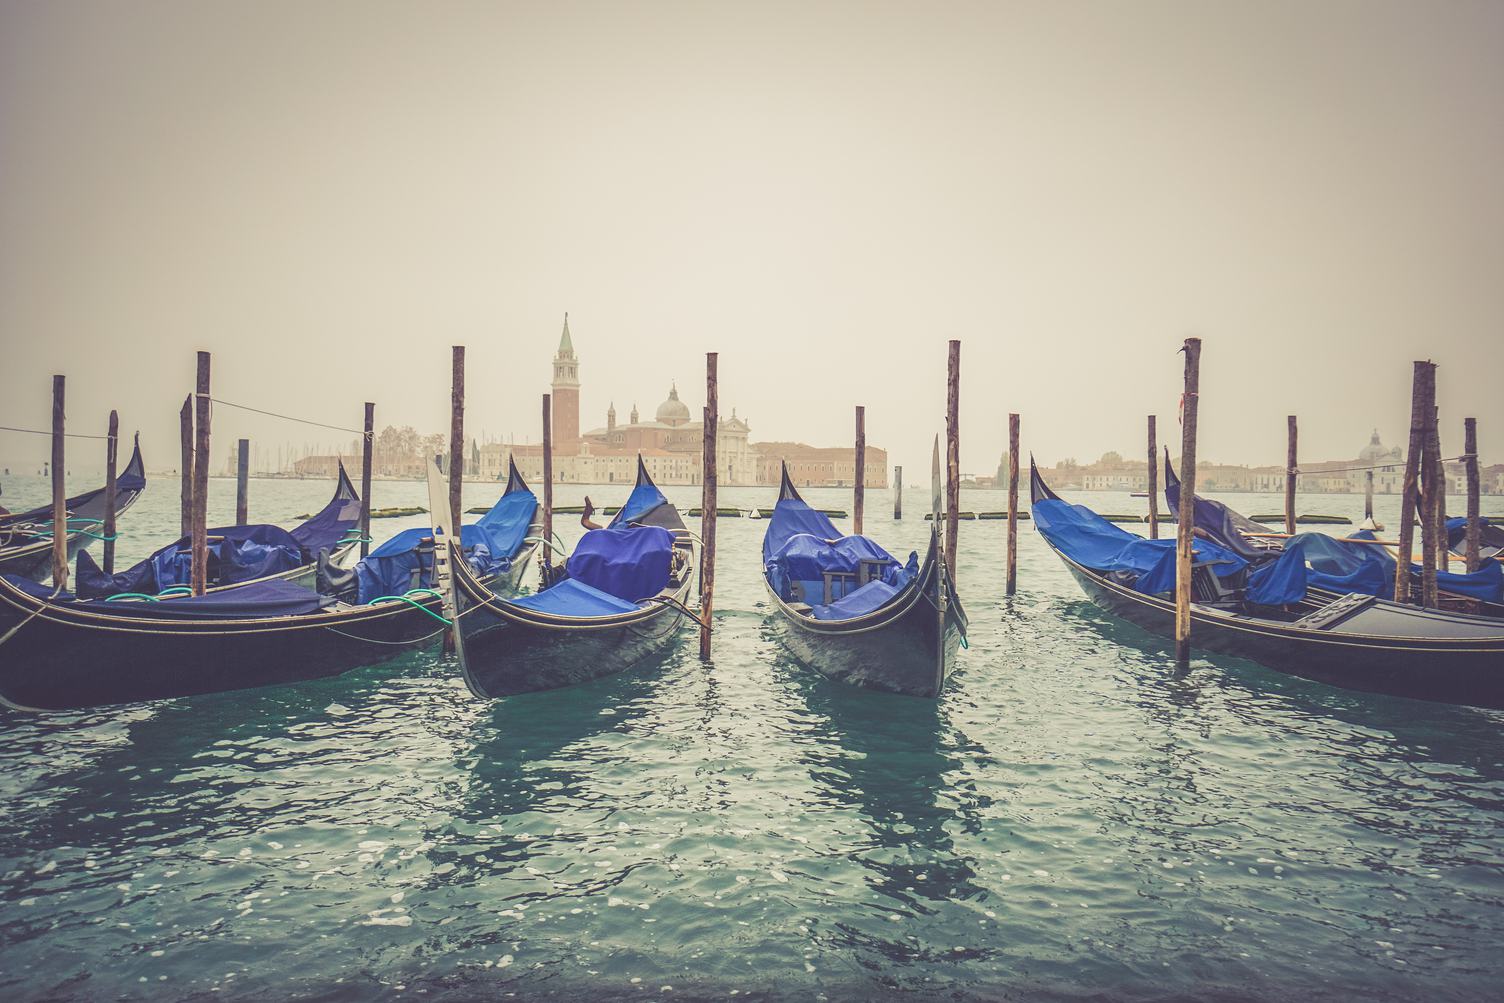 Gondolas Moored by Saint Mark Square with San Giorgio Di Maggiore Church in Venice, Italy